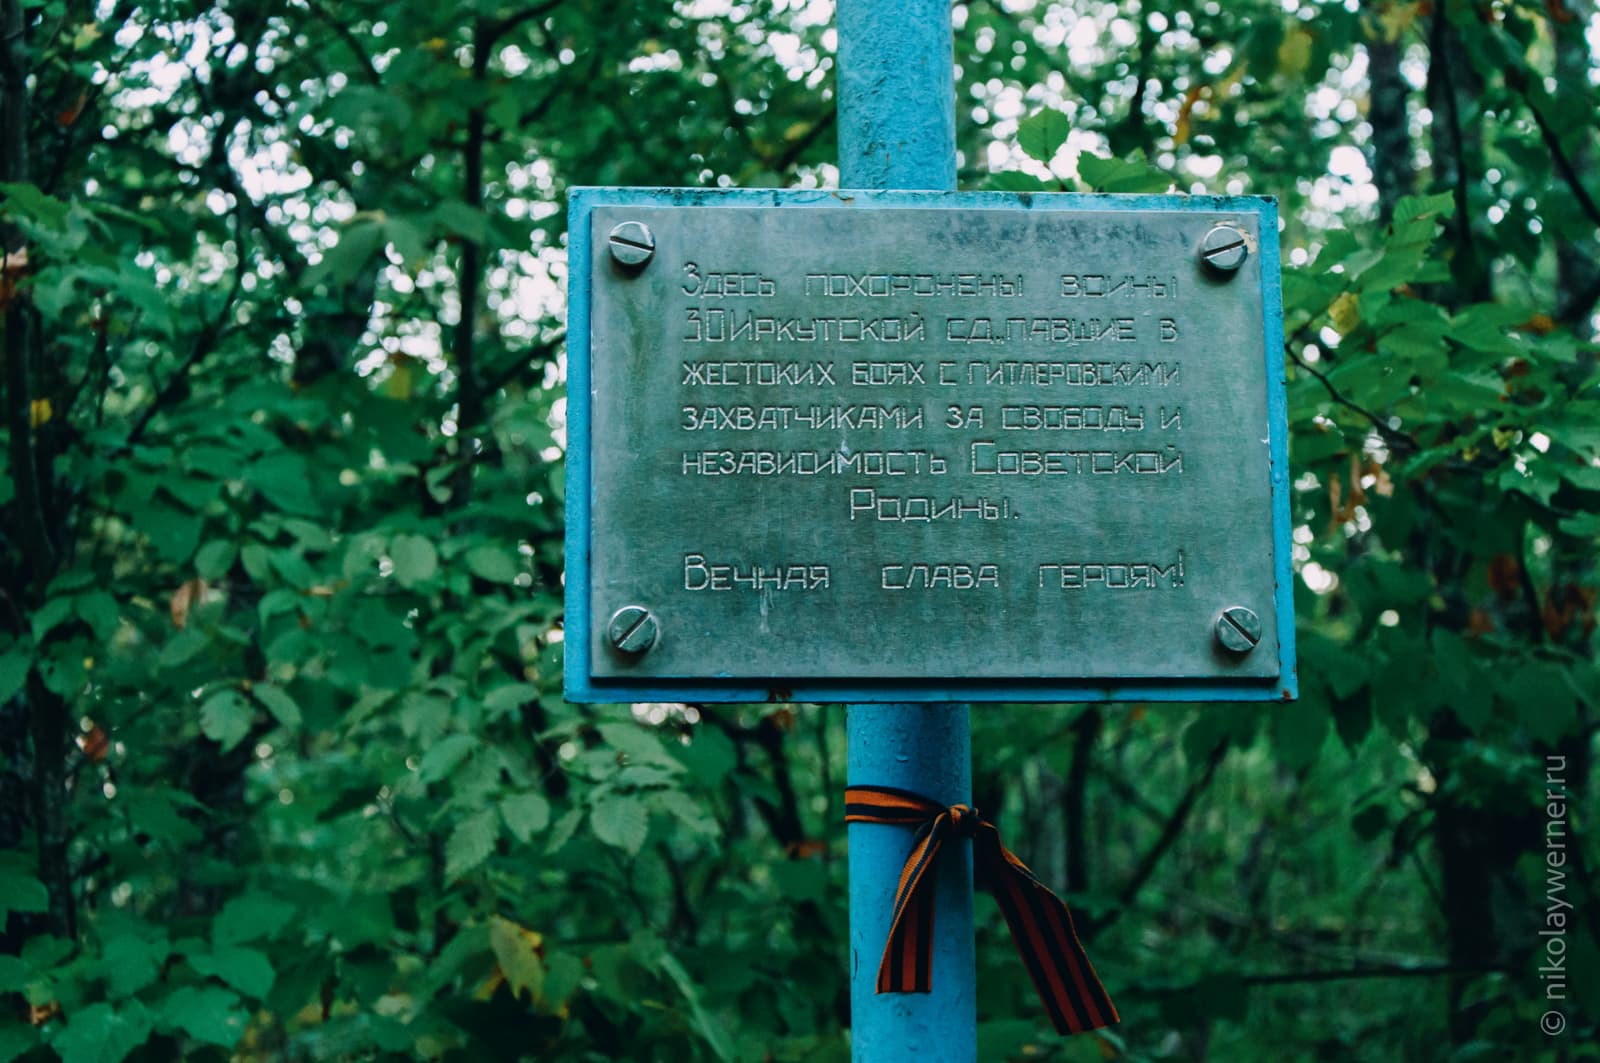 Синяя труба, на ней металлическая табличка с надписью: "Здесь похоронены воины 30-й Иркутской сд павшие в жестоких боях с гитлеровскими захватчиками за свободу и независимость Советской Родины. Вечная слава героям.«